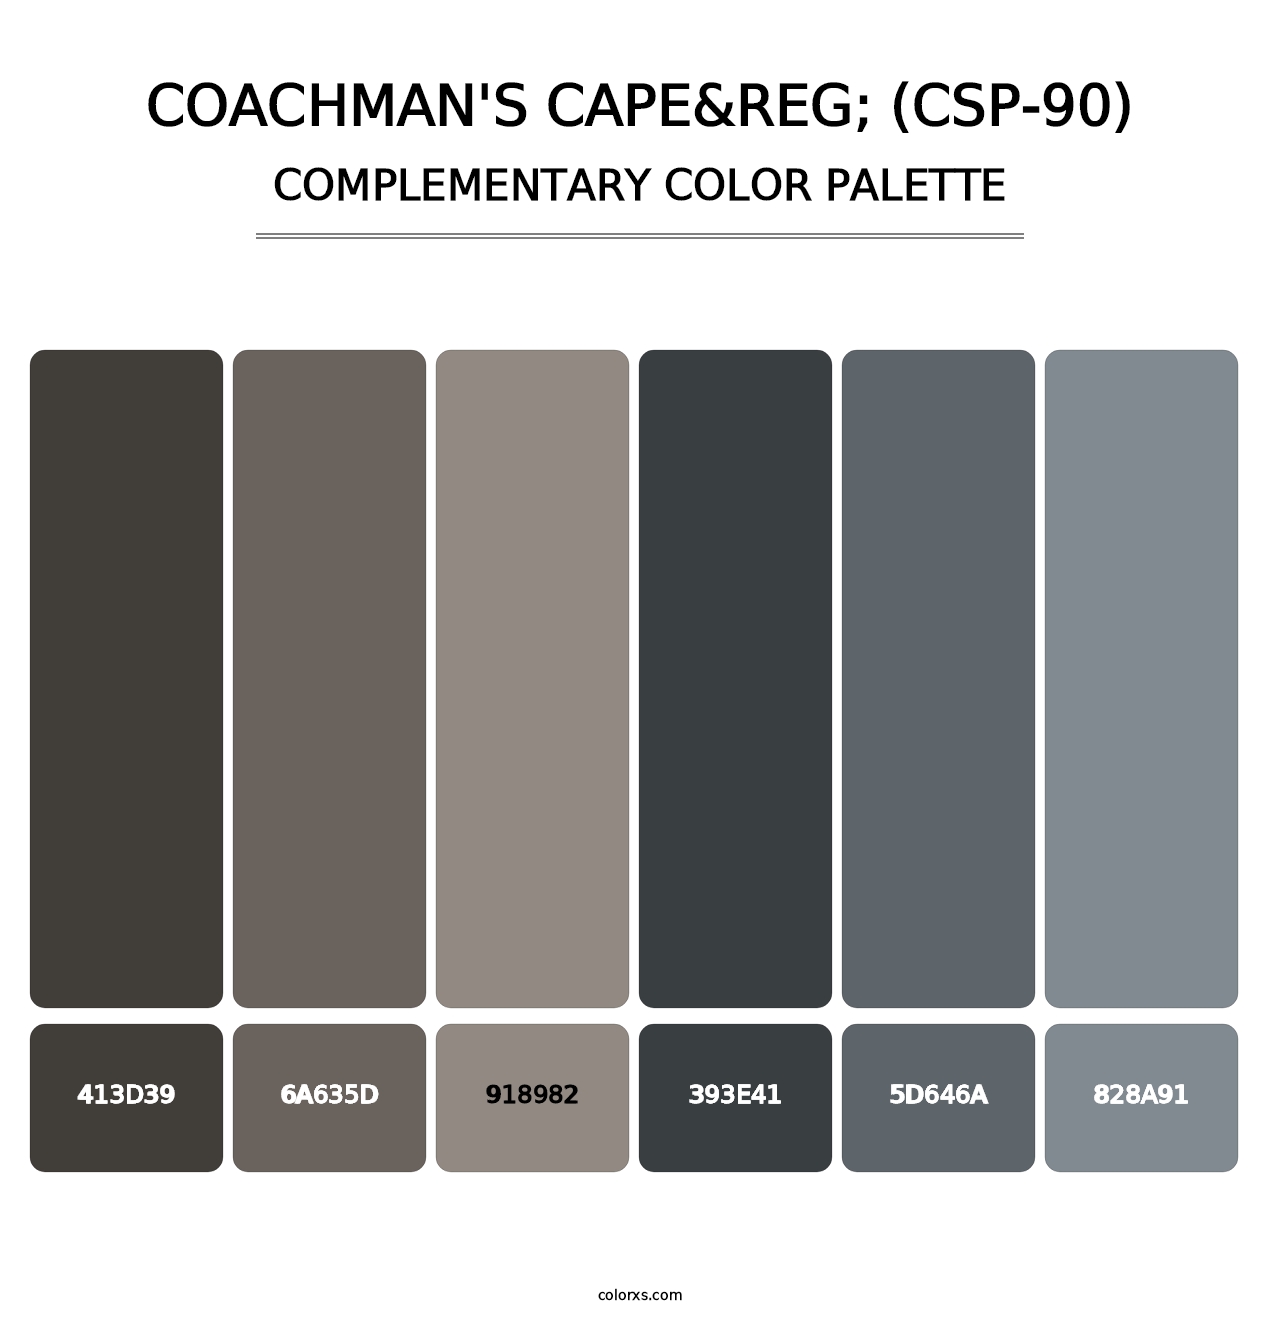 Coachman's Cape&reg; (CSP-90) - Complementary Color Palette